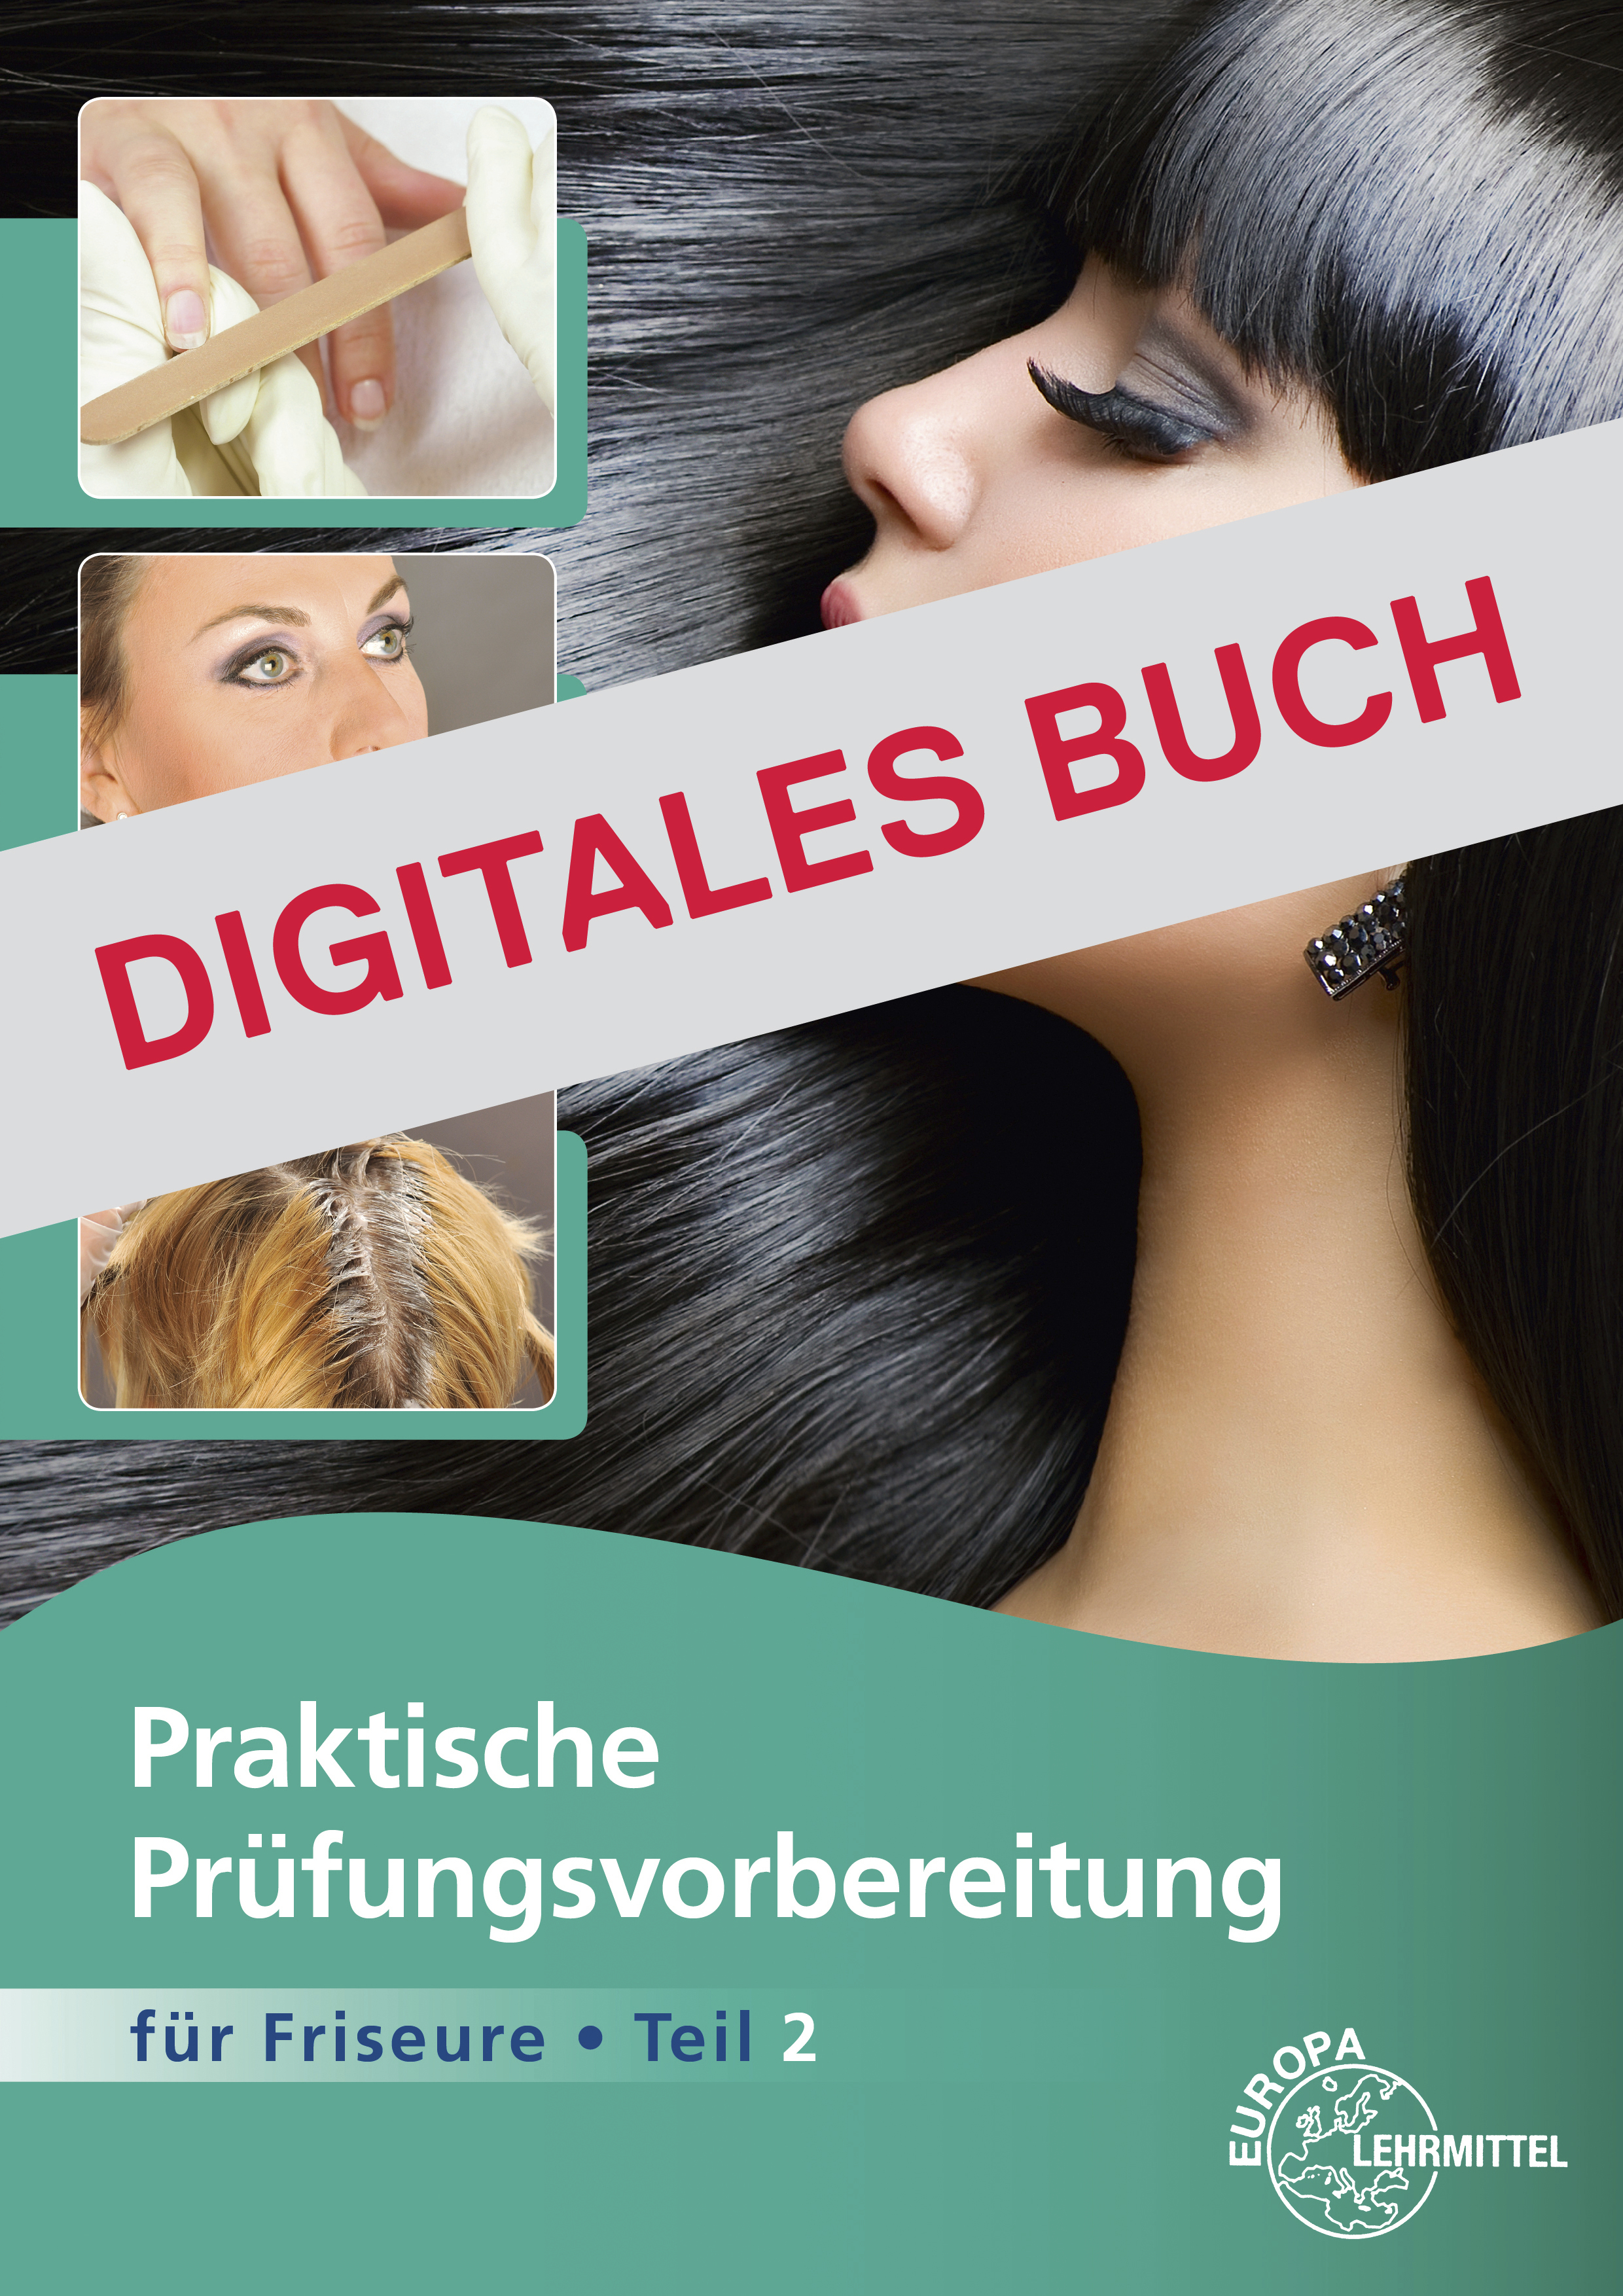 Praktische Prüfungsvorbereitung für Friseure, Teil 2 - Digitales Buch